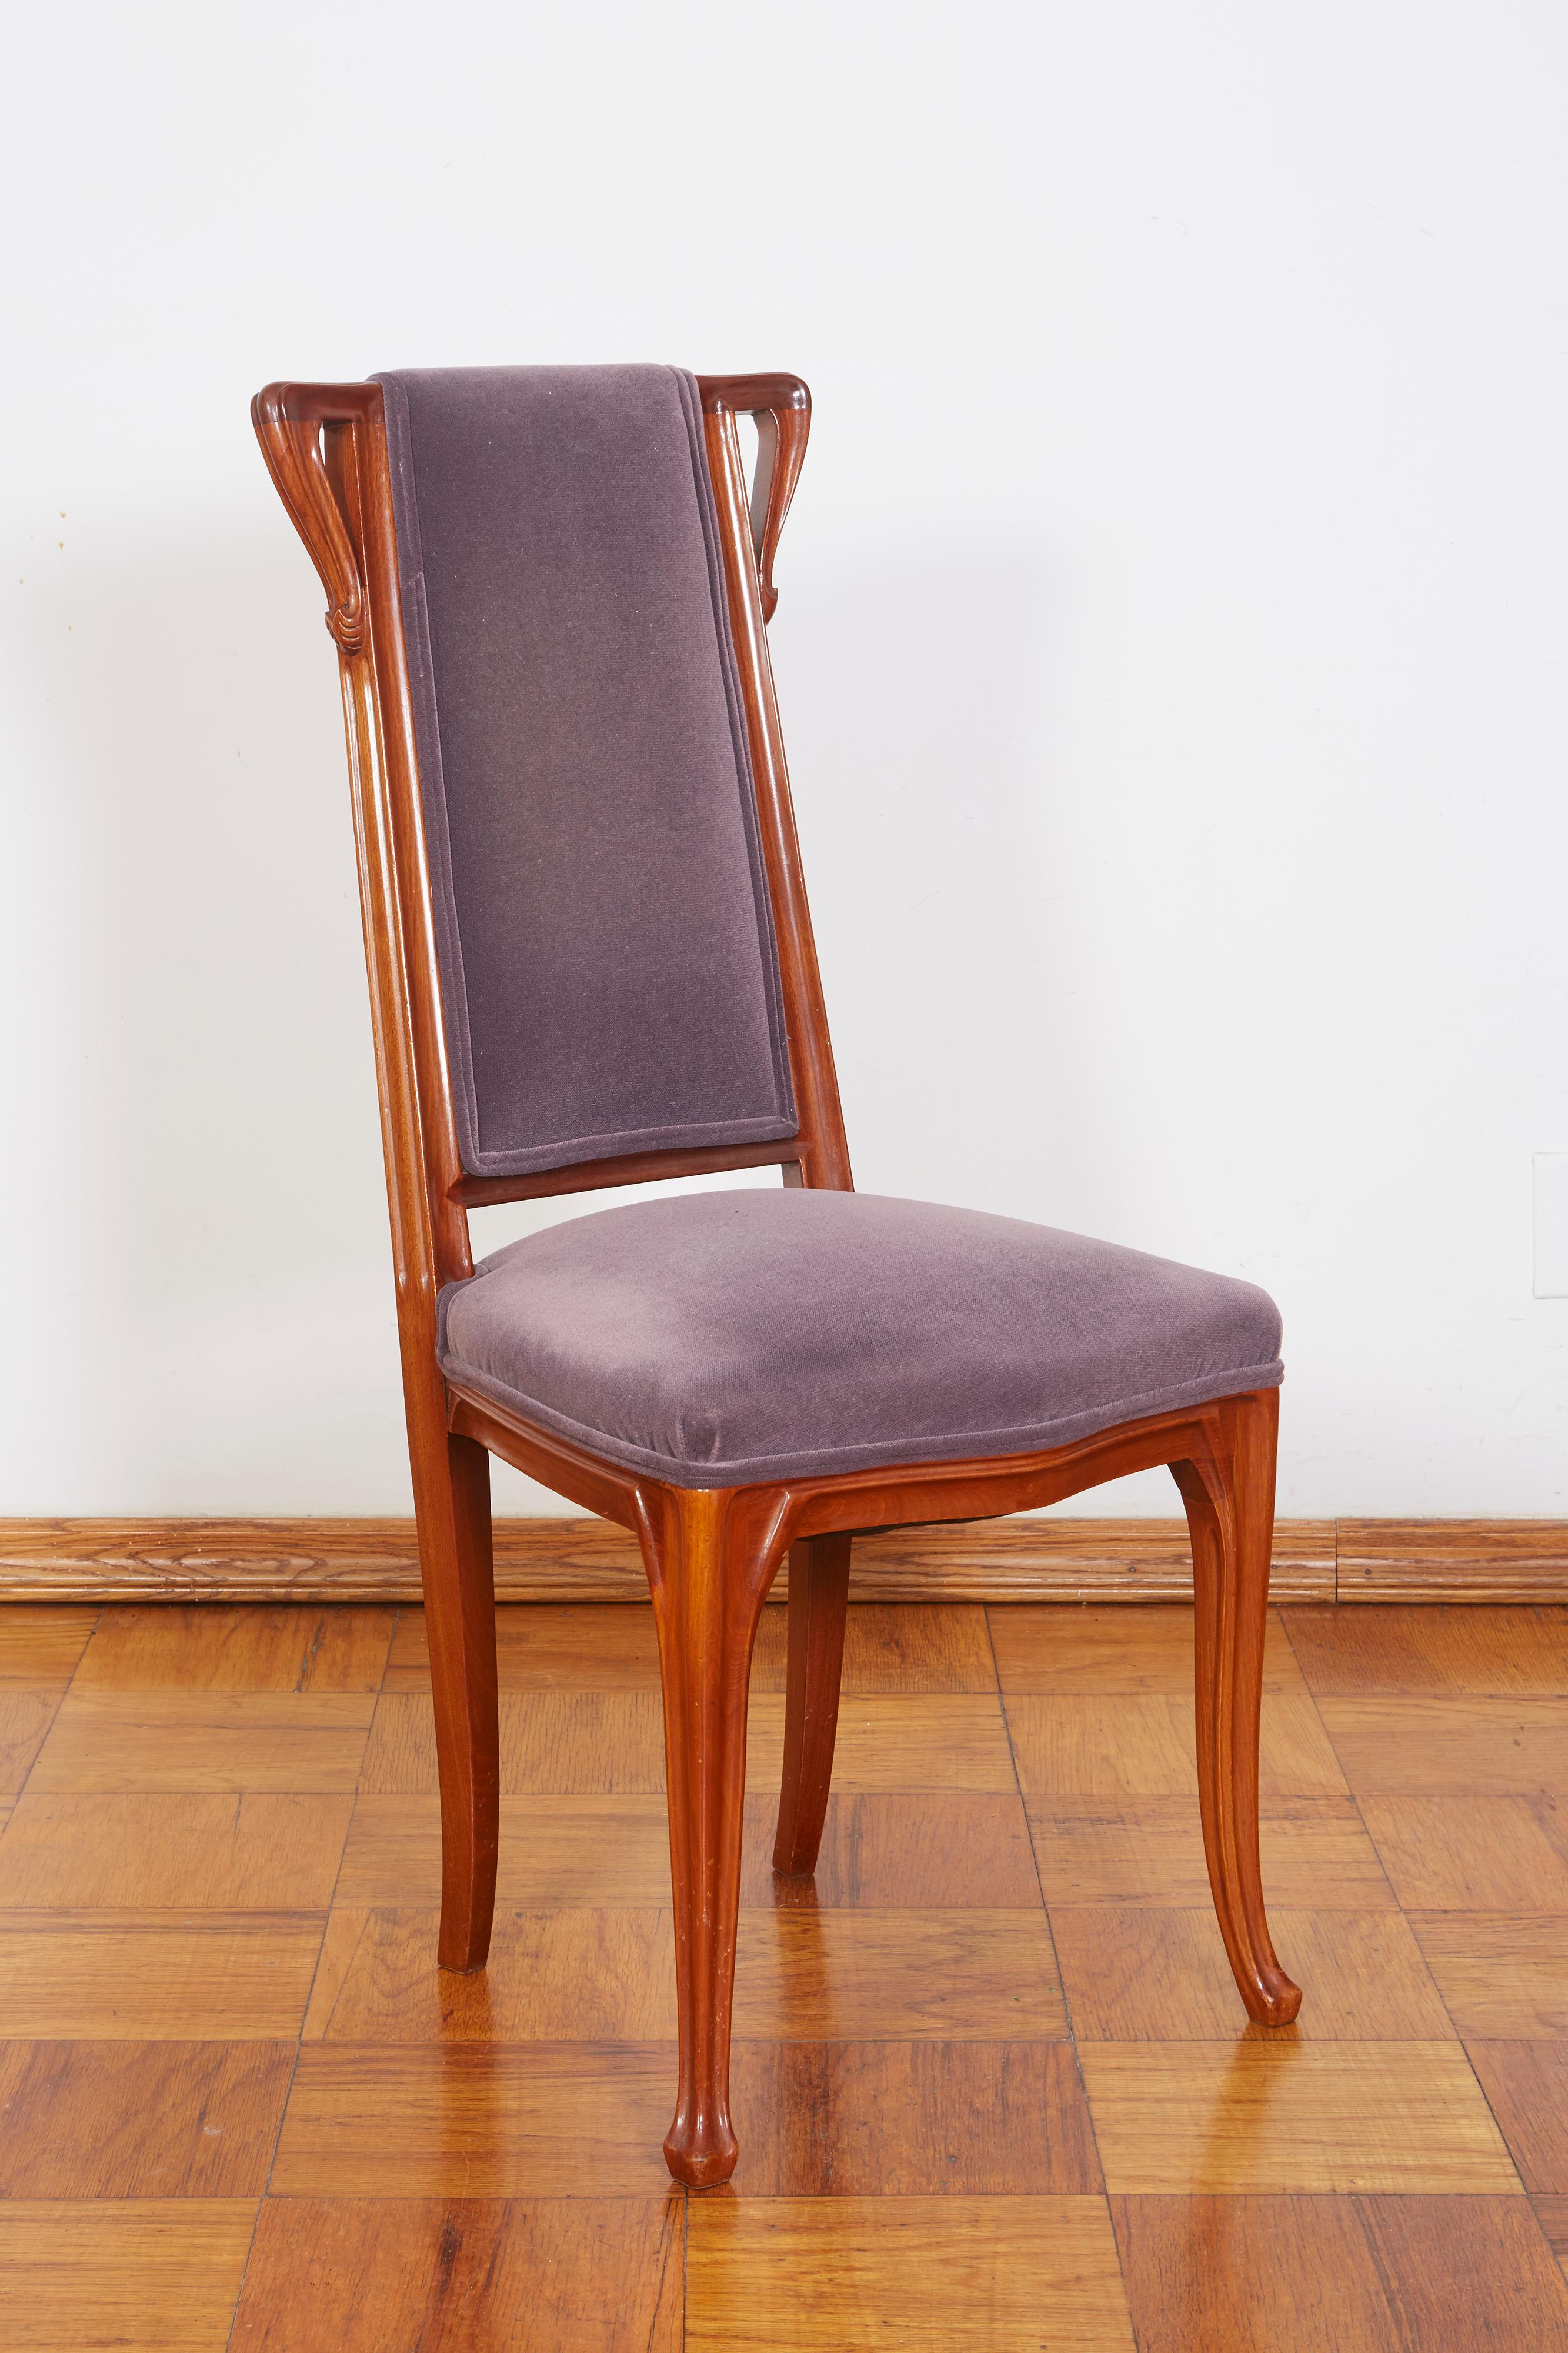 Paire de chaises Louis Majorelle de style Art Nouveau français
Mesures : Largeur : 17